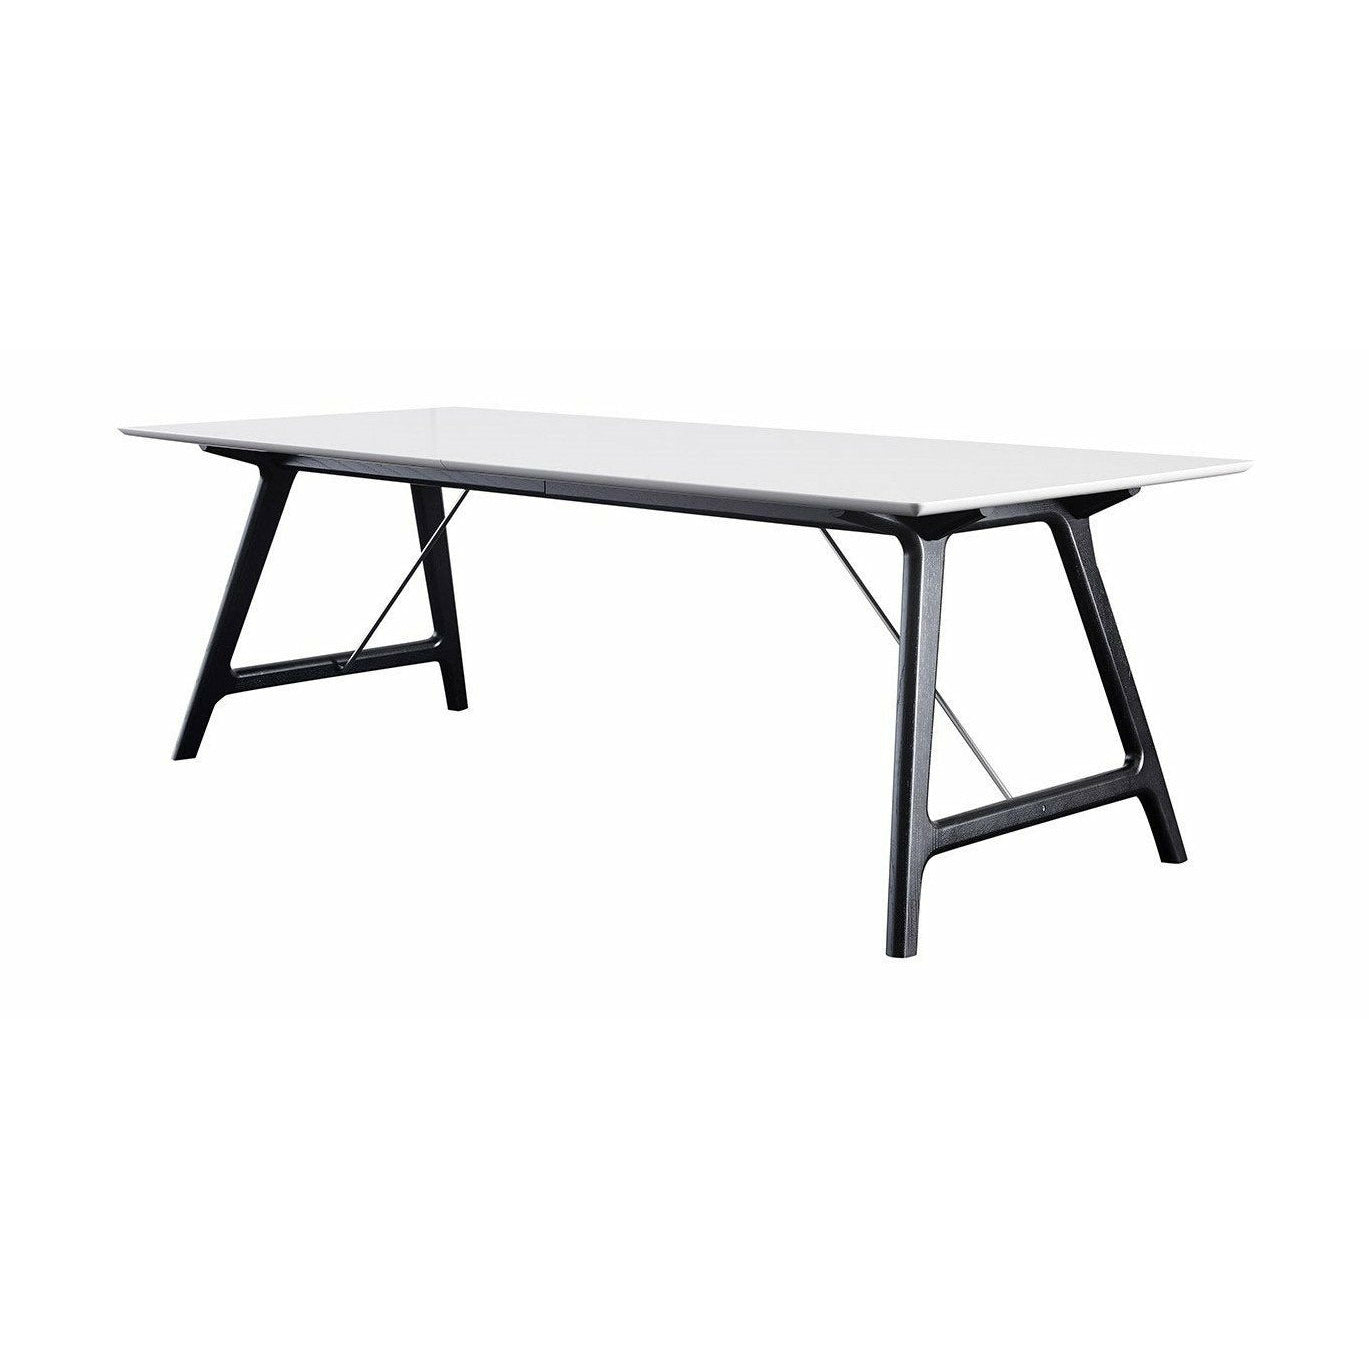 Andersen Furniture T7 Udvidelig bord hvid laminat, sort ramme, 220 cm